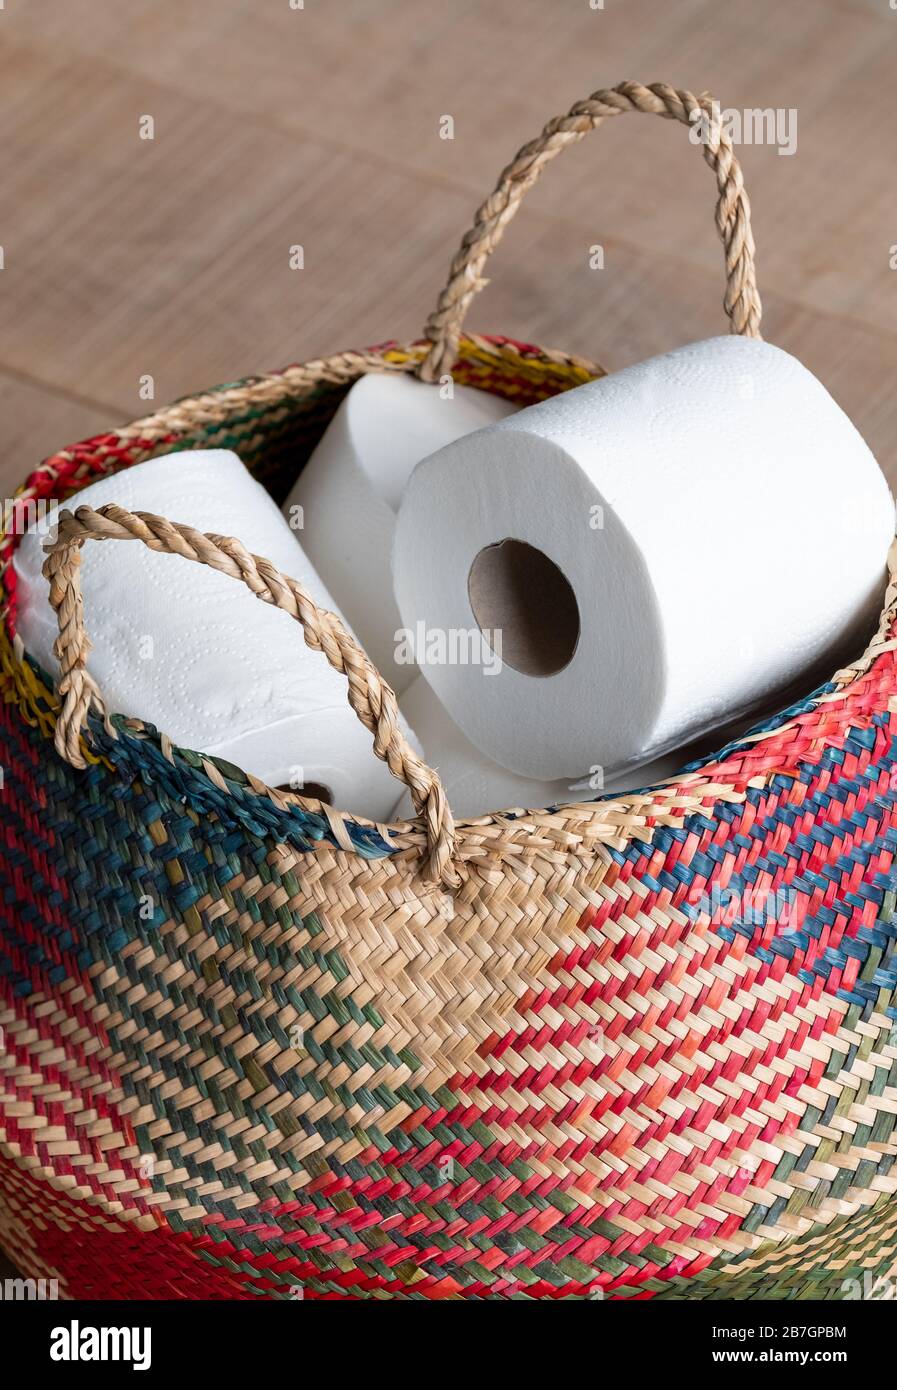 Almacenamiento de rollos de papel higiénico